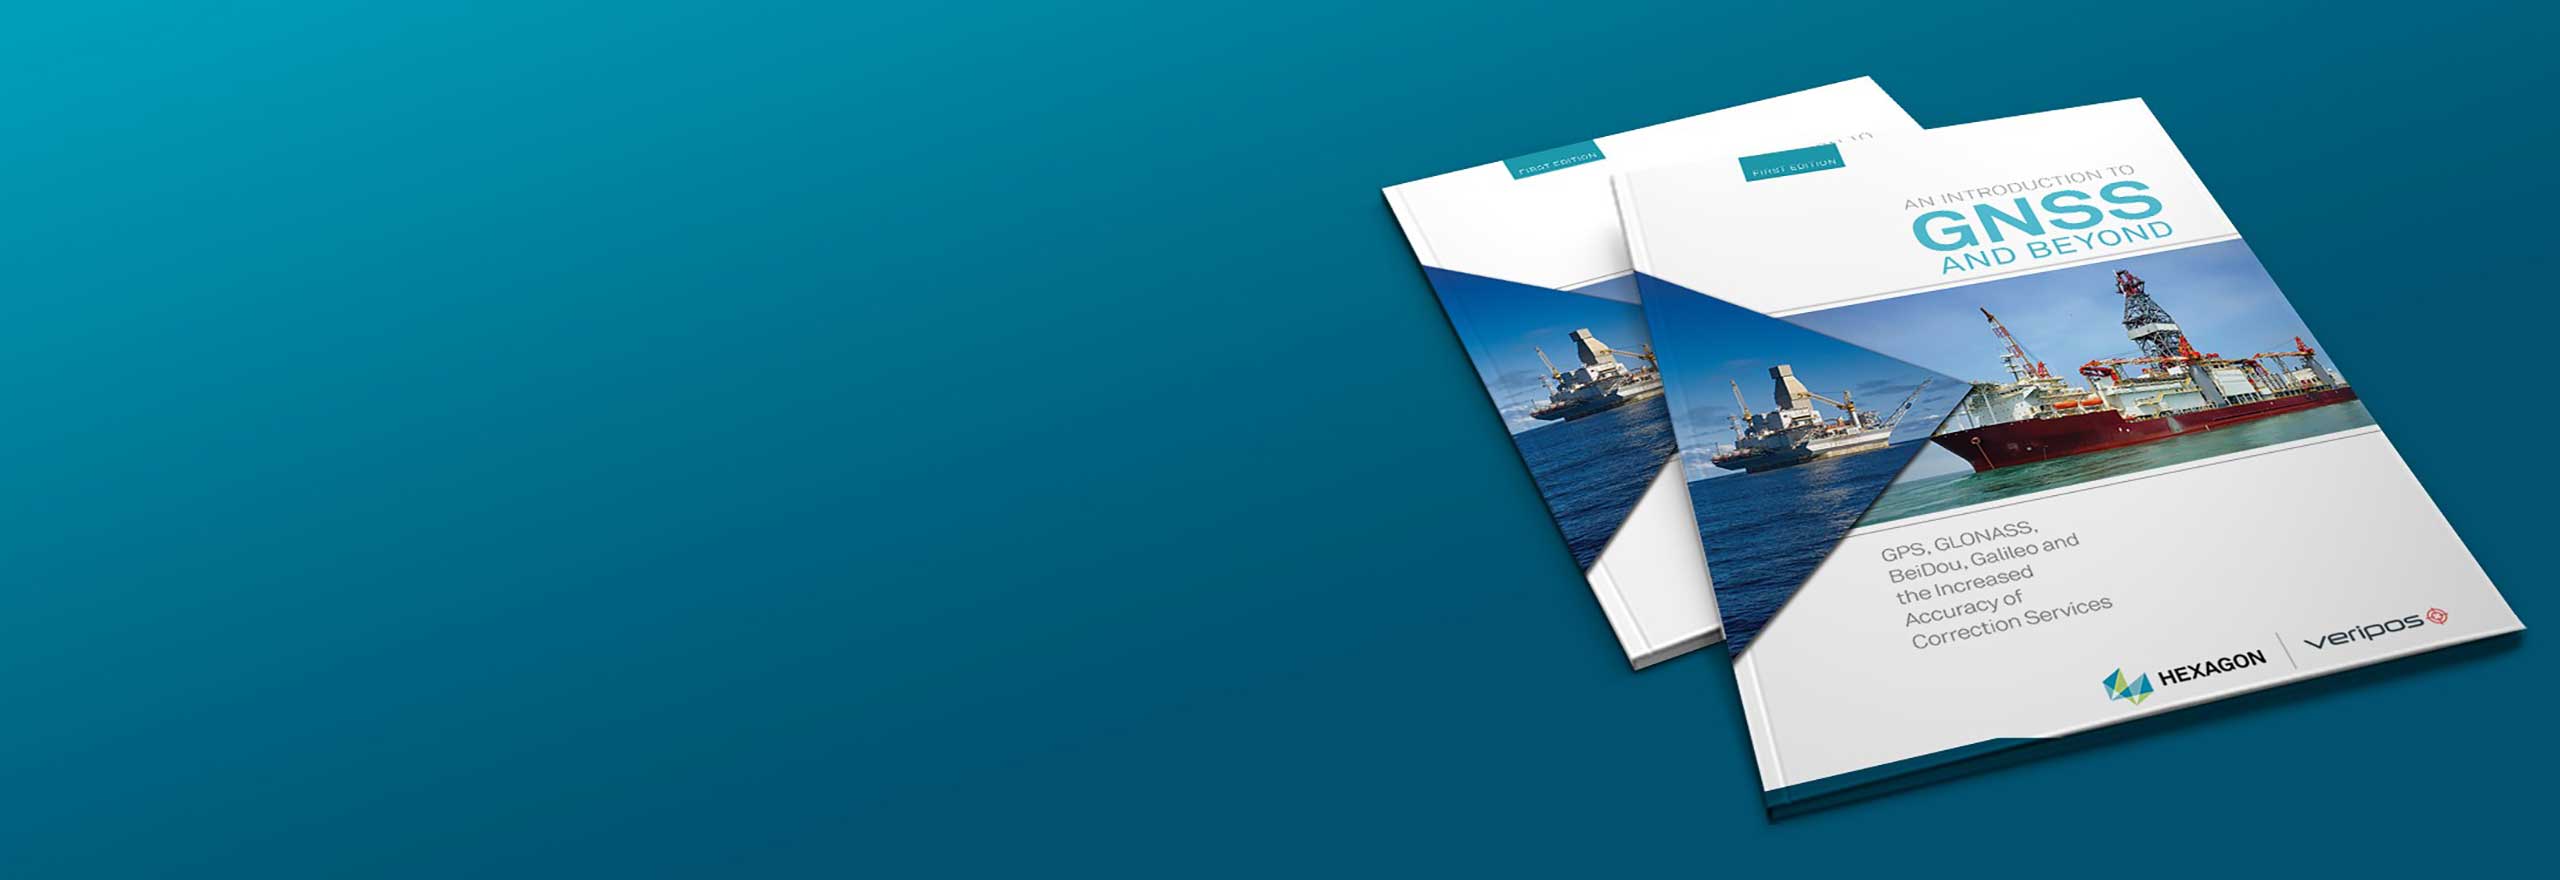 Zwei Exemplare unseres E-Books „Einführung in GNSS“, das sich auf die dynamische Positionierung bezieht, auf türkisfarbenem Hintergrund.